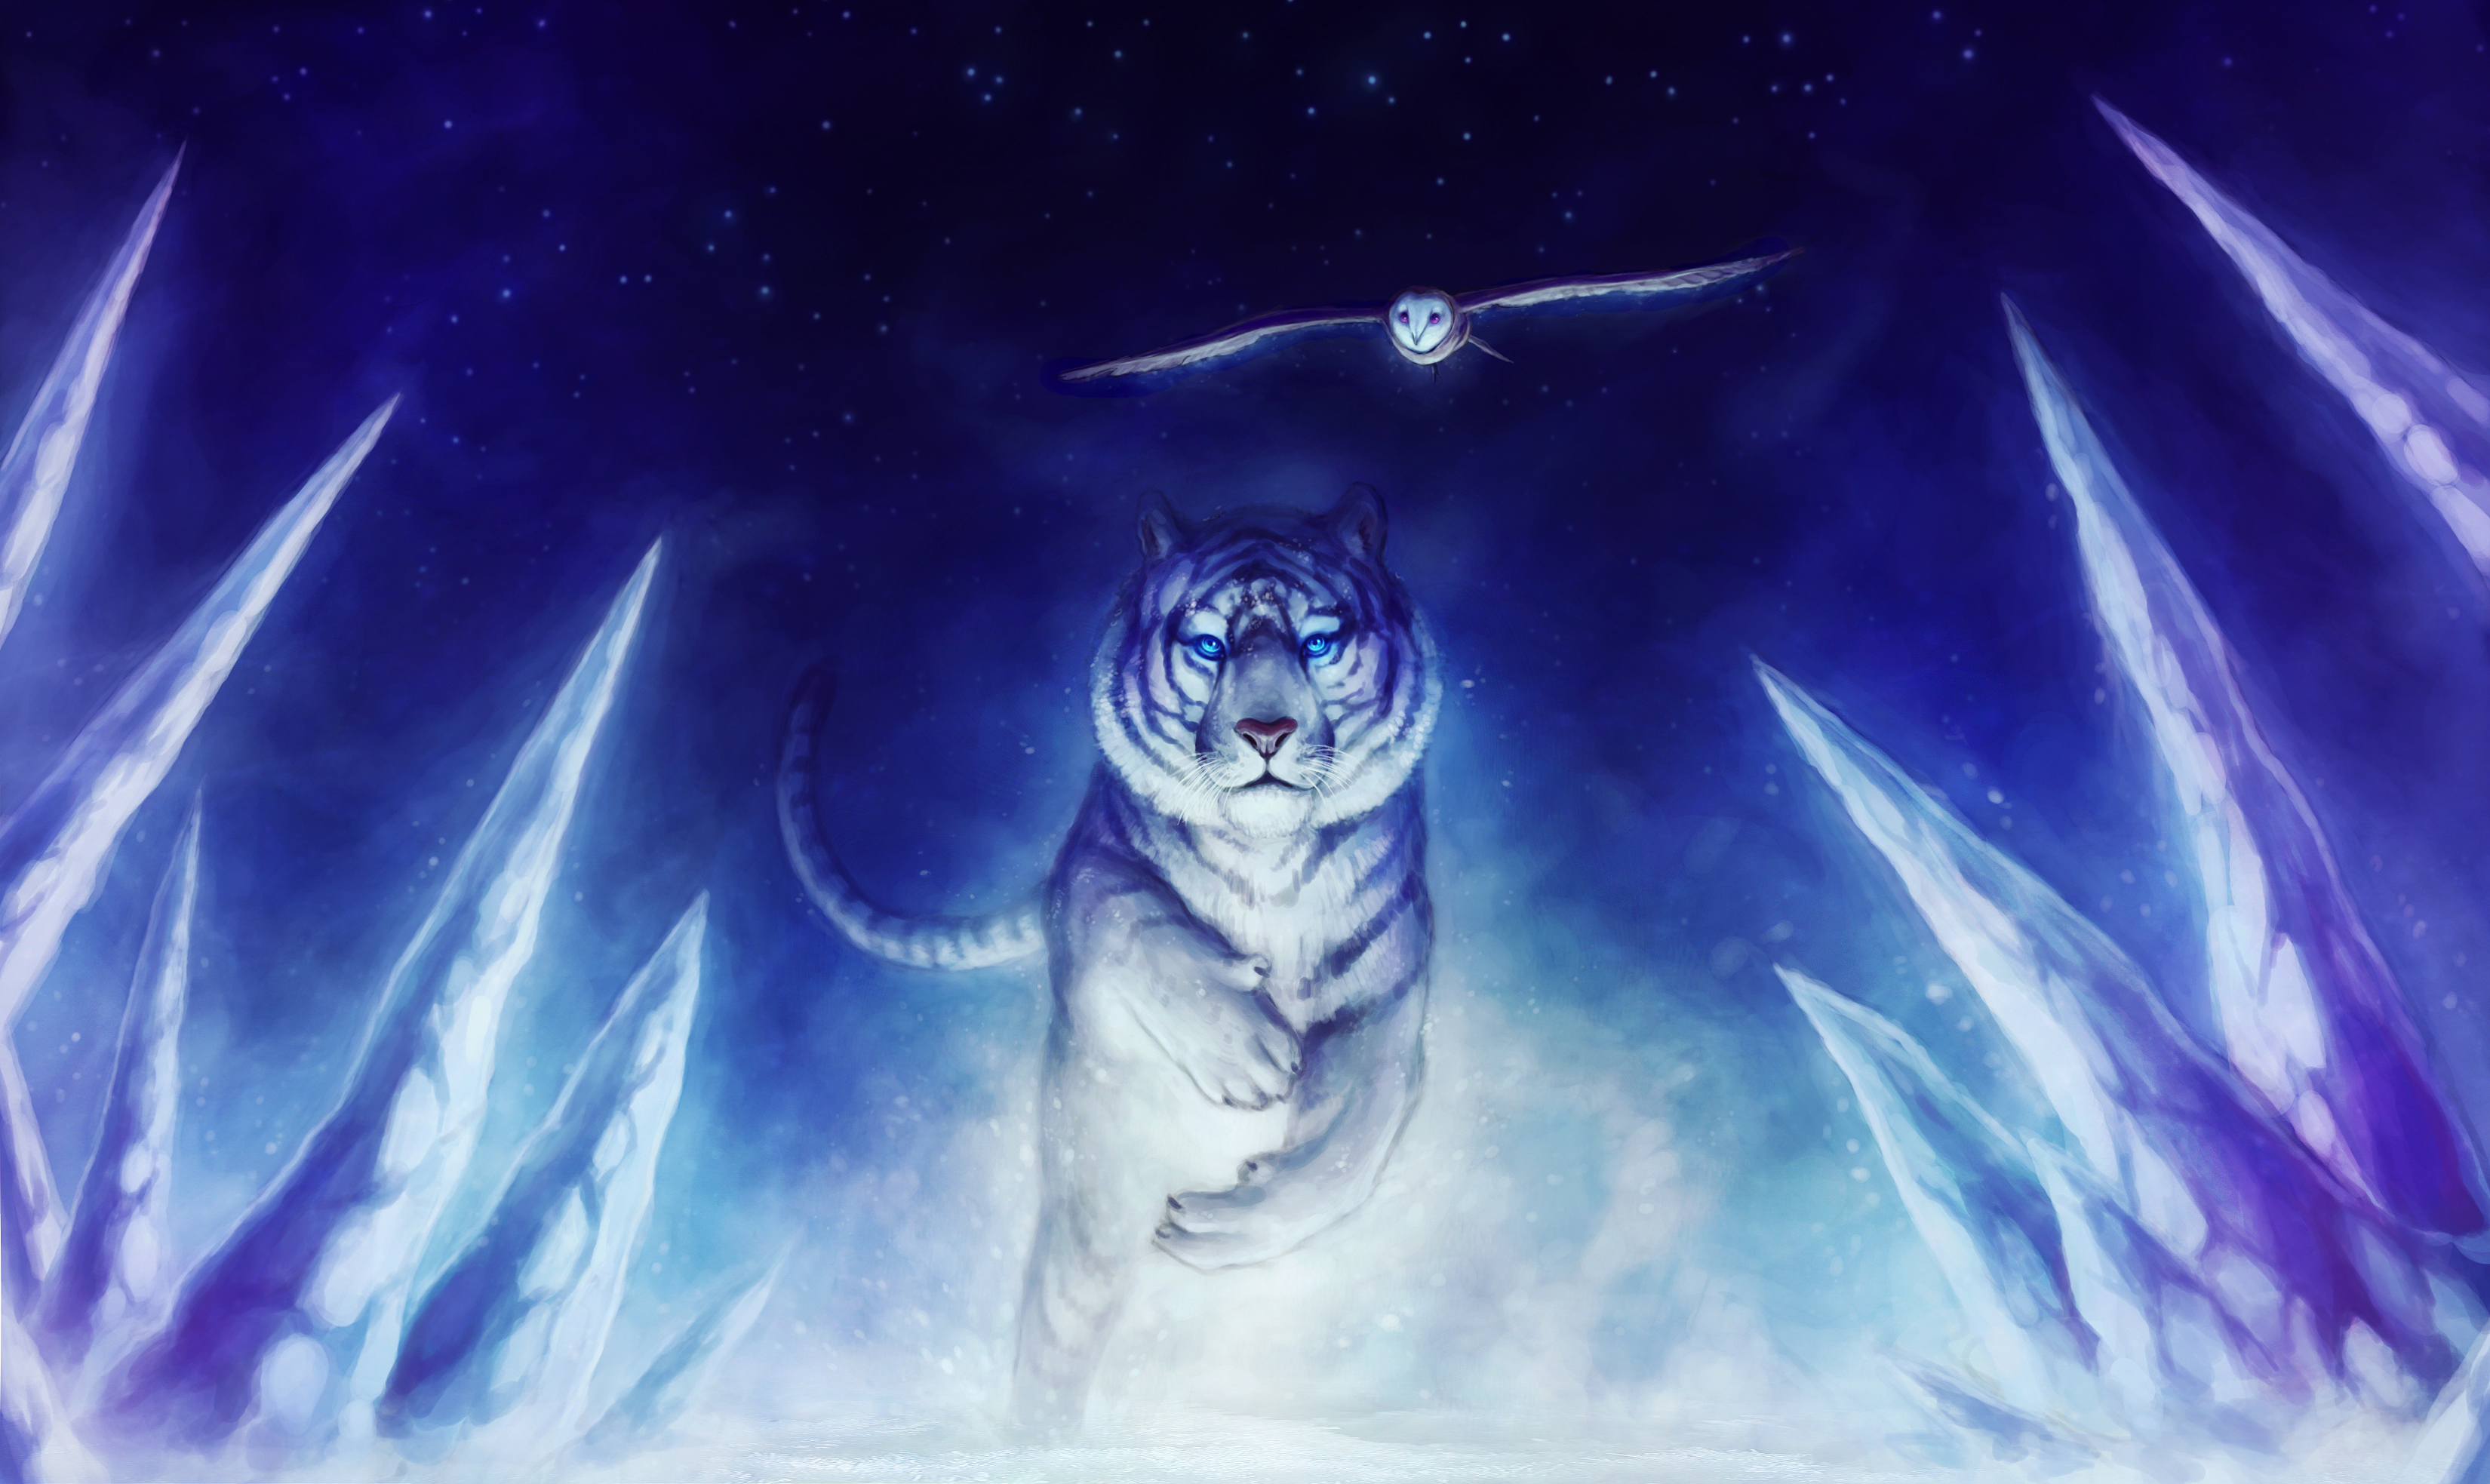 fantasy tiger and owl by Jonas Jödicke